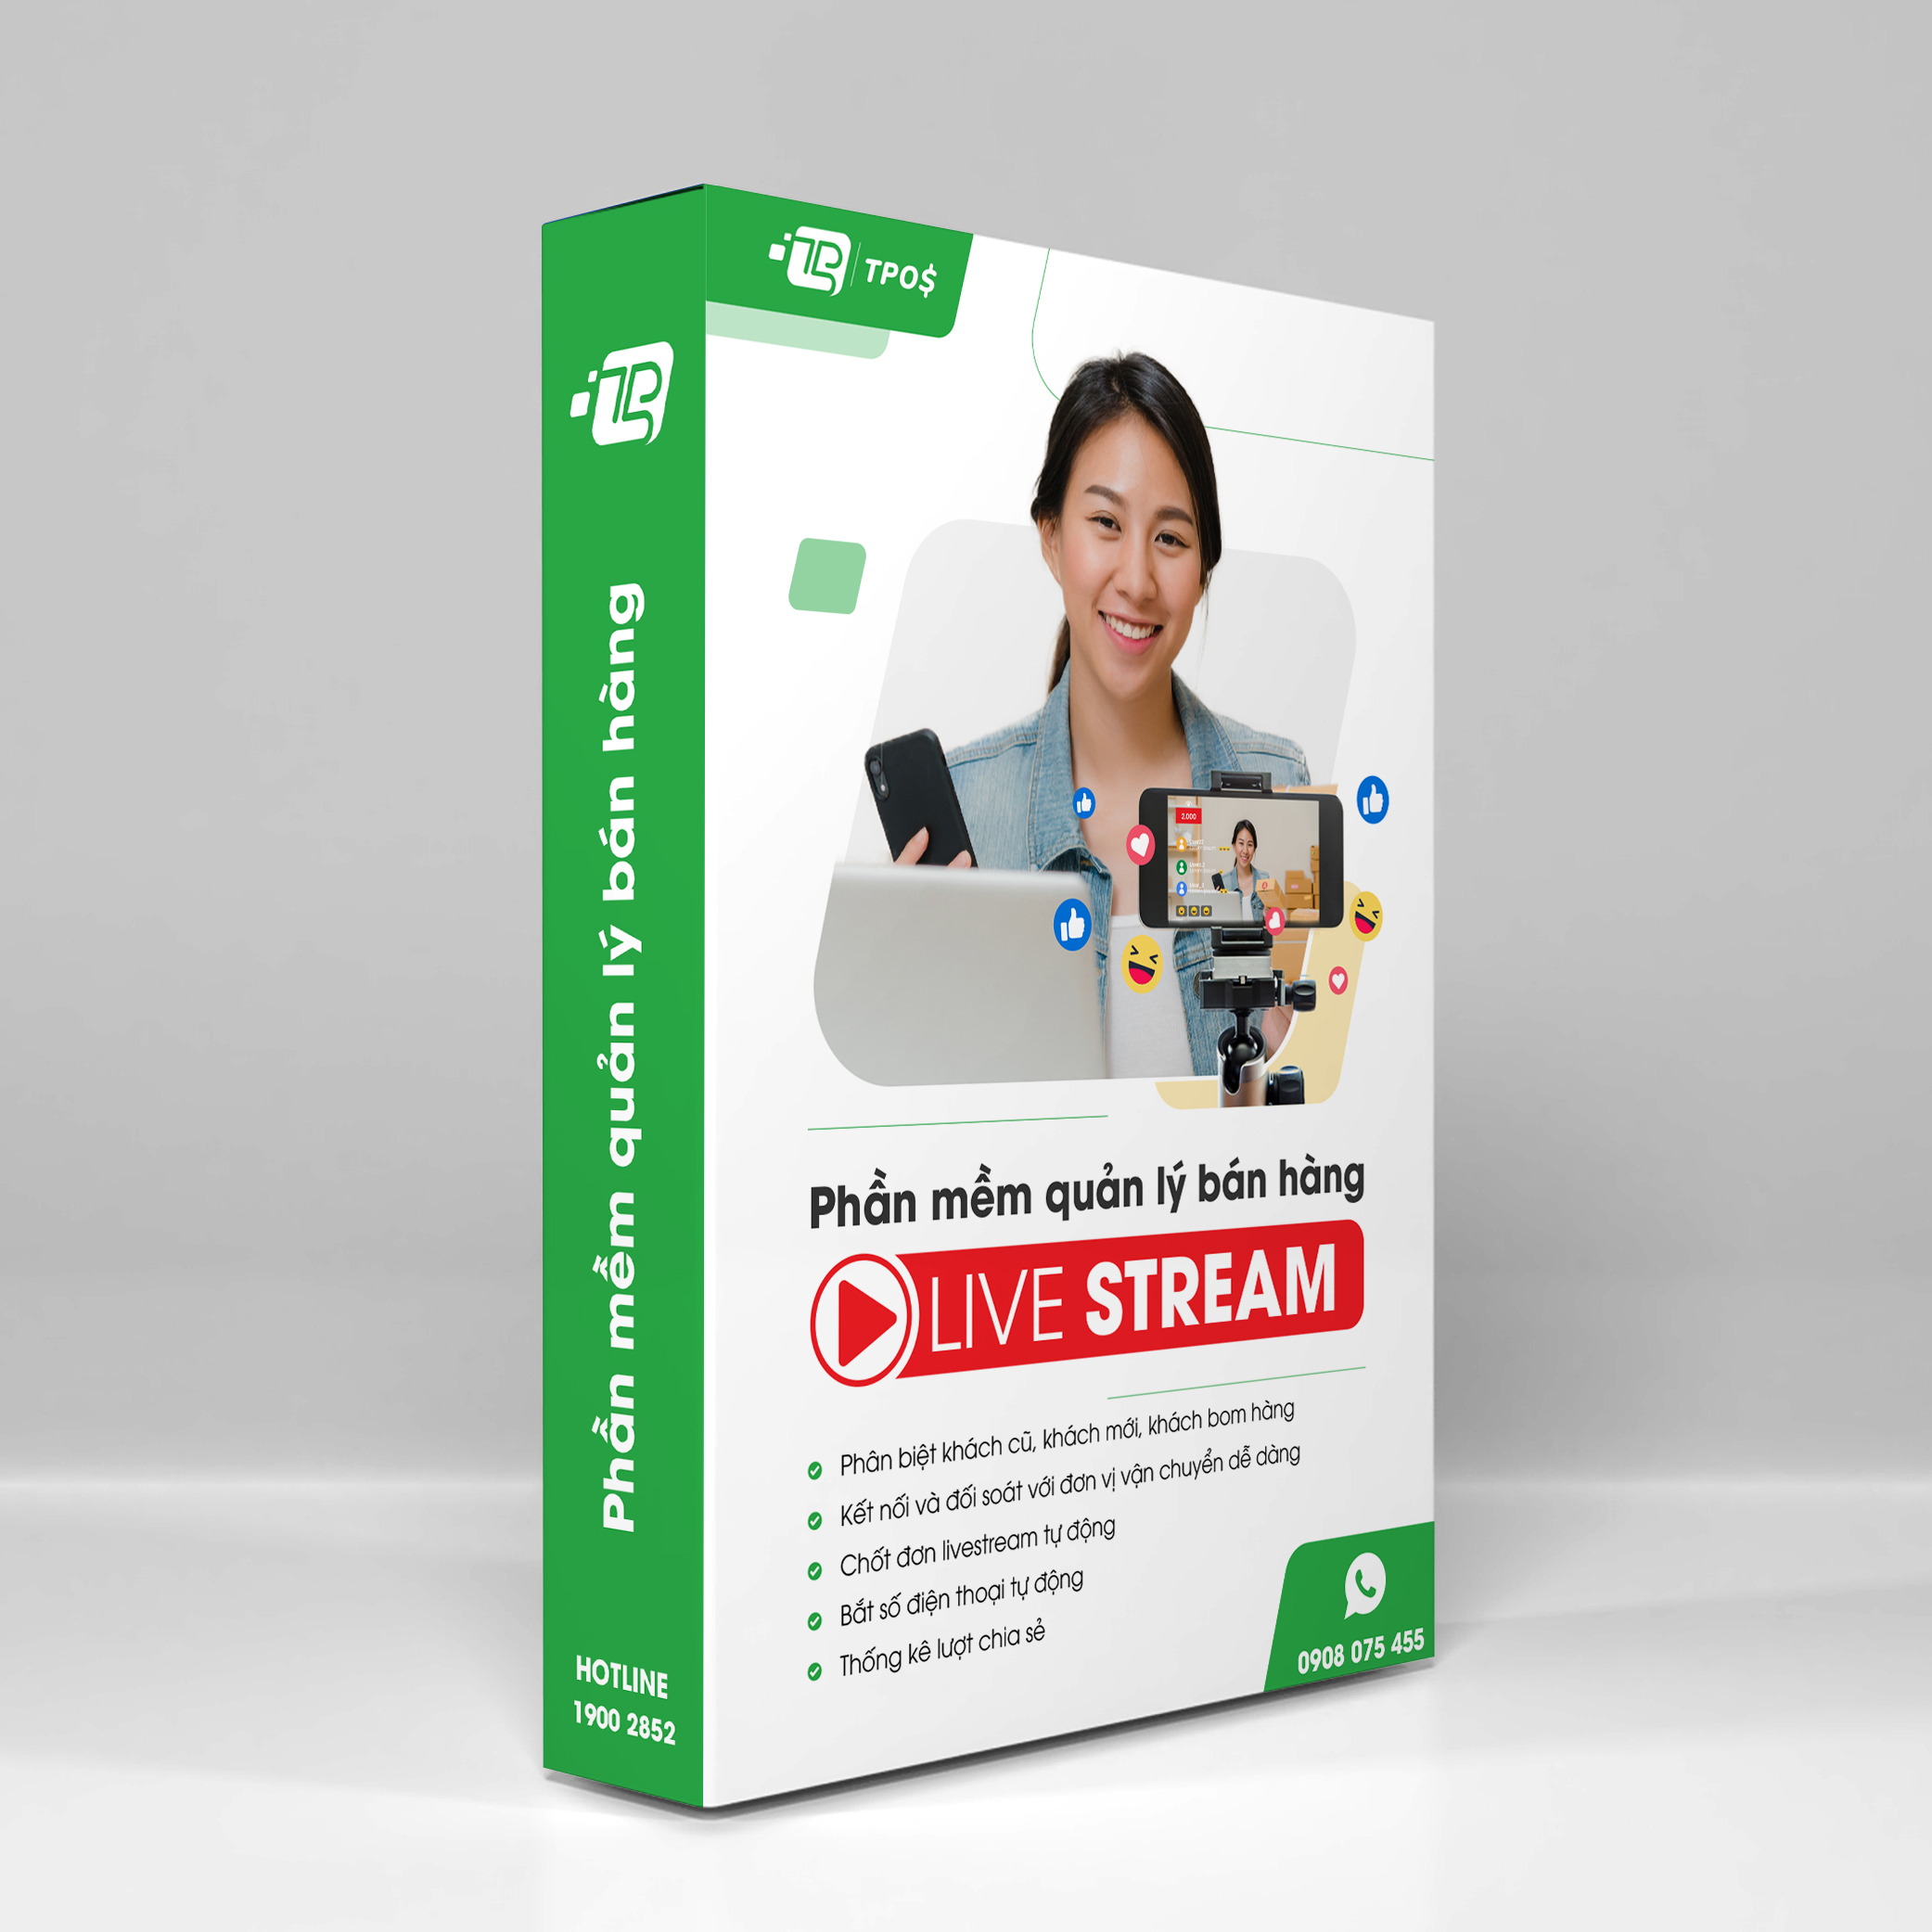 Phần mềm quản lý bán hàng và chốt đơn hàng Livestream TPos - Gói tháng- Hàng Chính Hãng